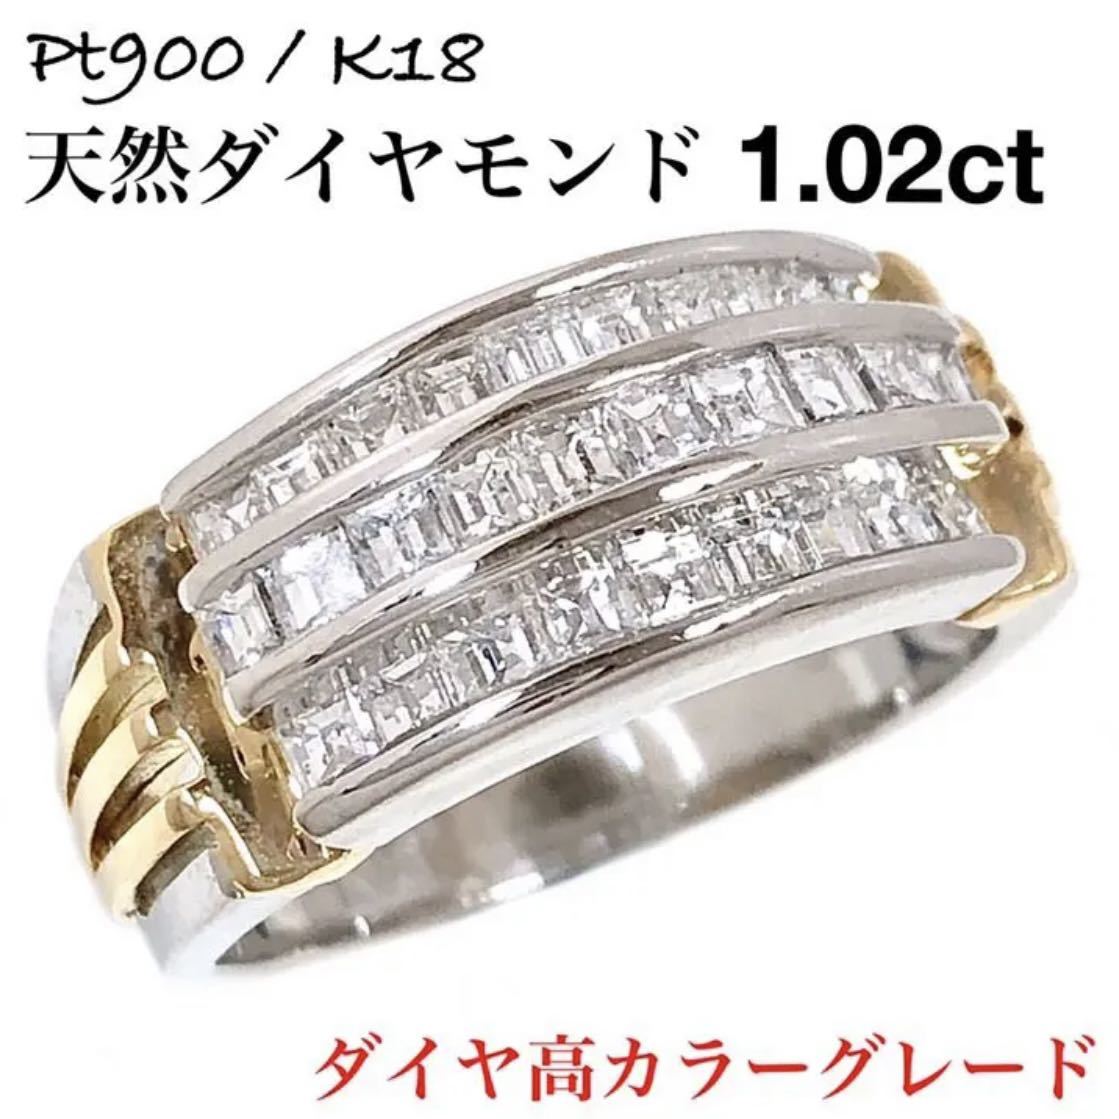 ダイヤモンド 1.02ct コンビ Pt900 K18 ダイヤ リング 指輪 腕時計